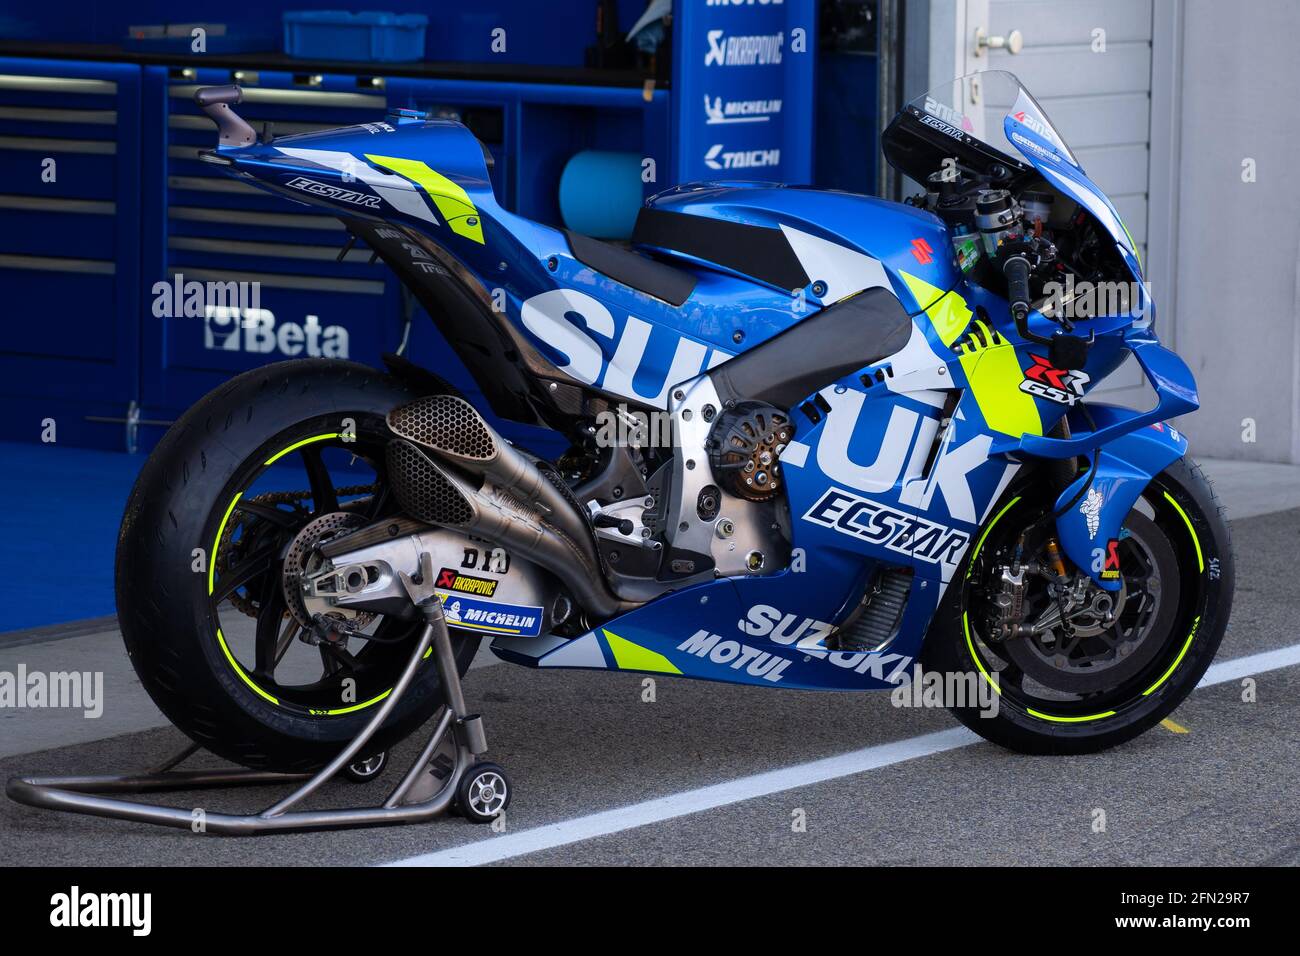 Moto GP Bike Team Suzuki Stock Photo - Alamy